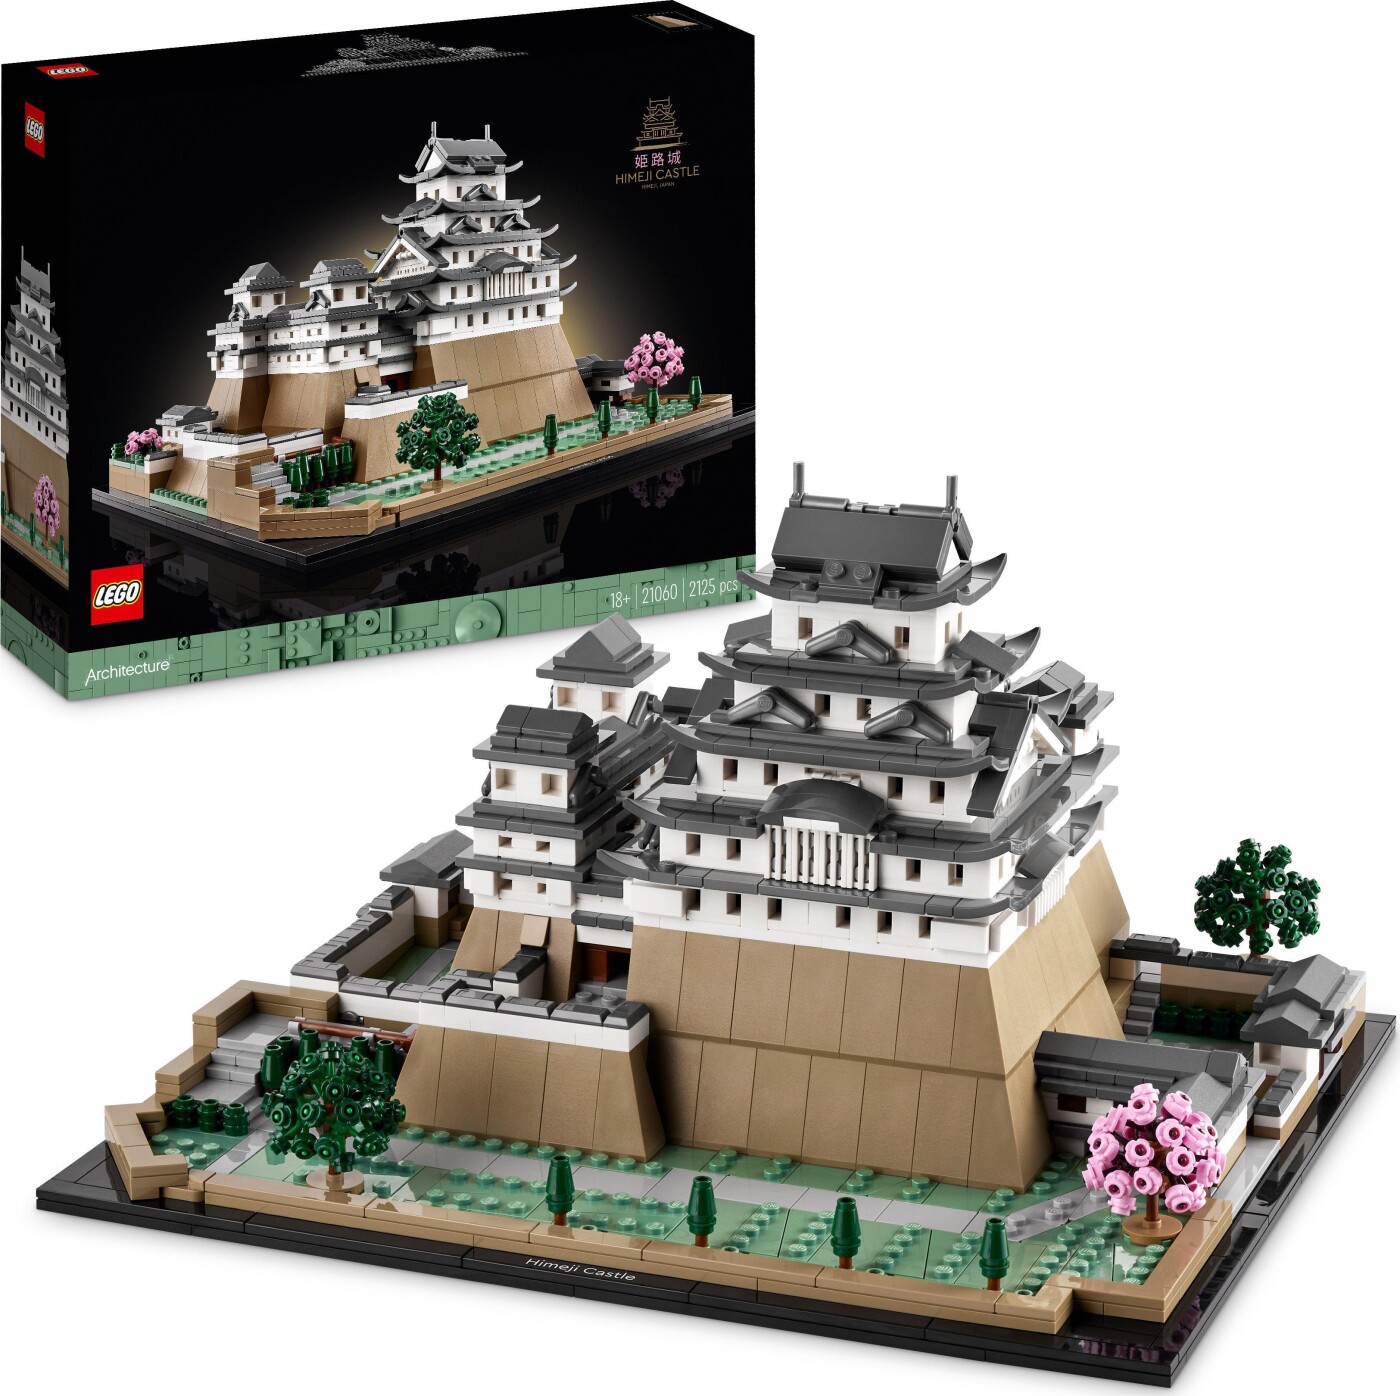 Billede af Lego Architecture - Himeji-borgen - 21060